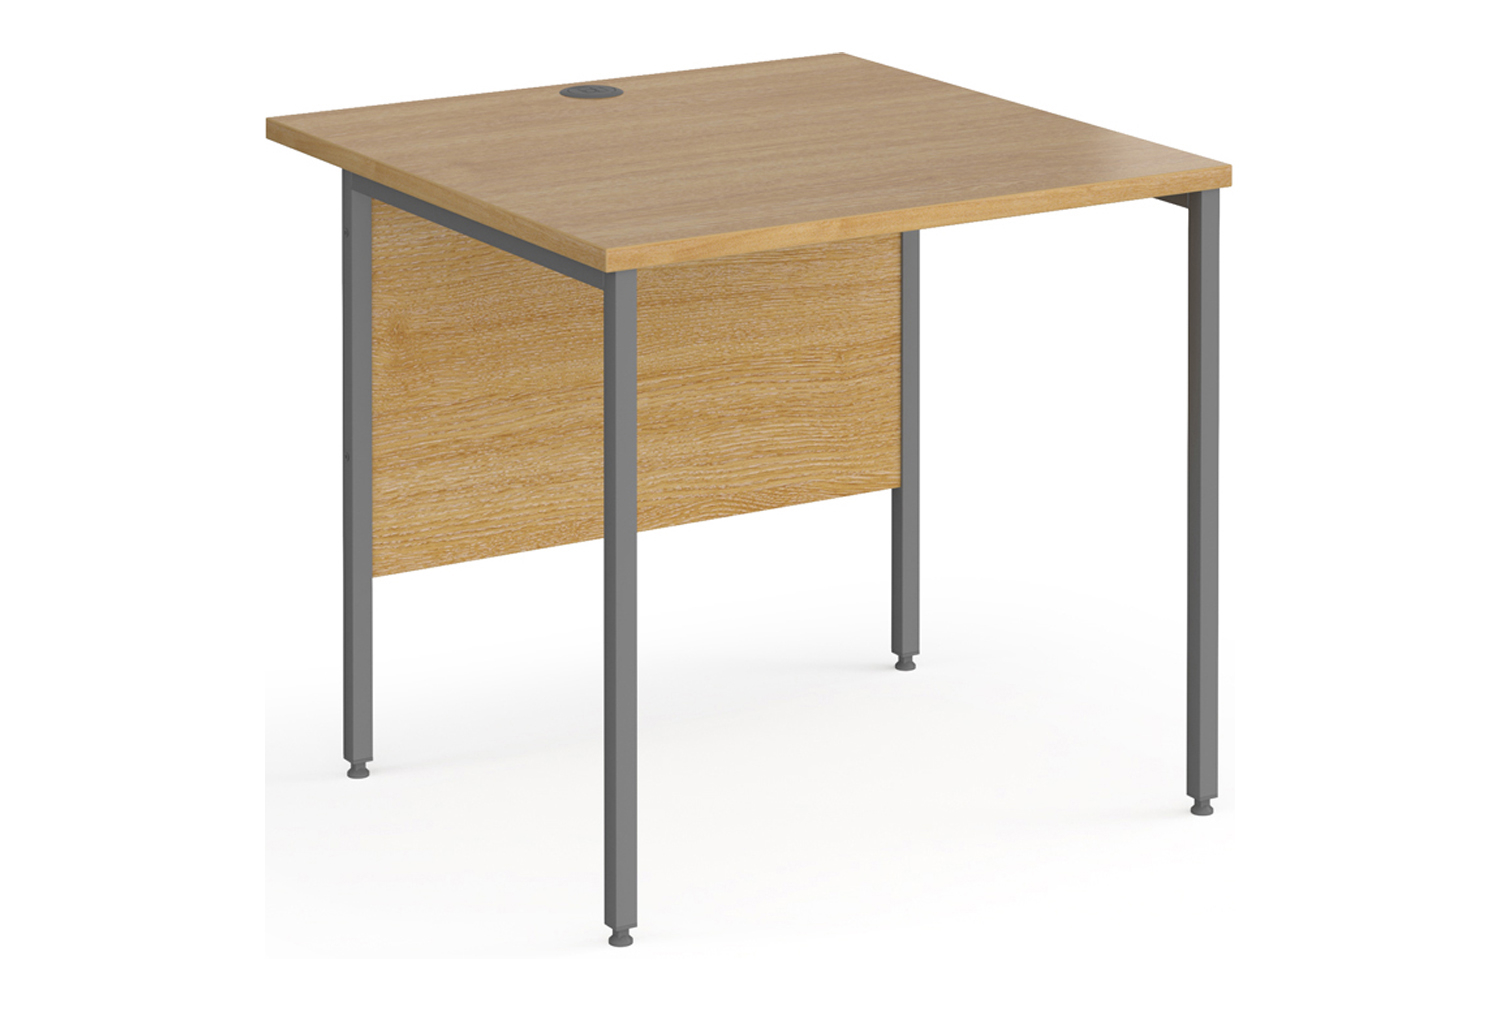 Value Line Classic+ Rectangular H-Leg Office Desk (Graphite Leg), 80wx80dx73h (cm), Oak, Express Delivery